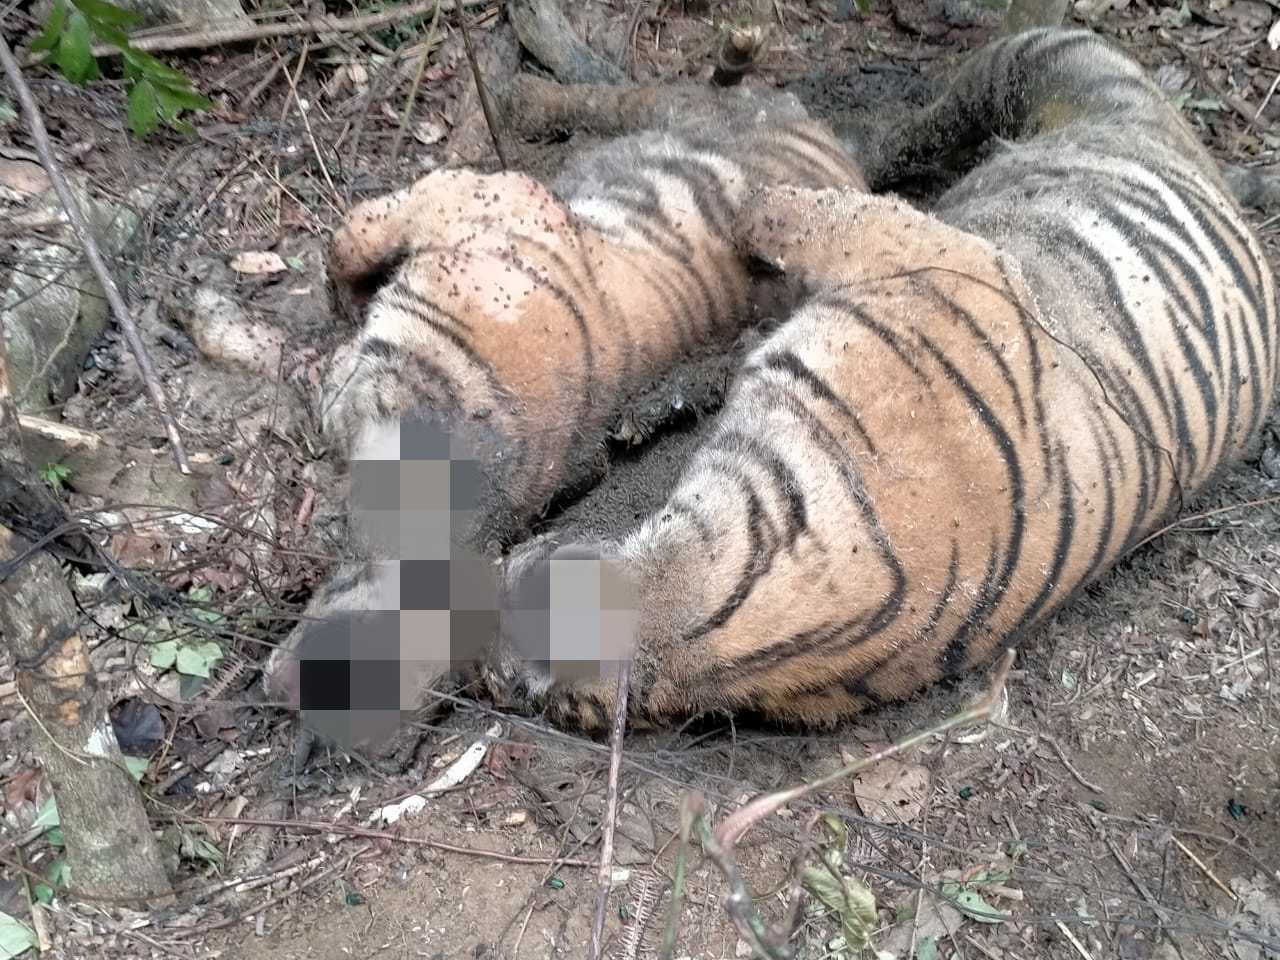 Sedih! 3 Harimau Mati Mengenaskan Diduga Karena Jerat